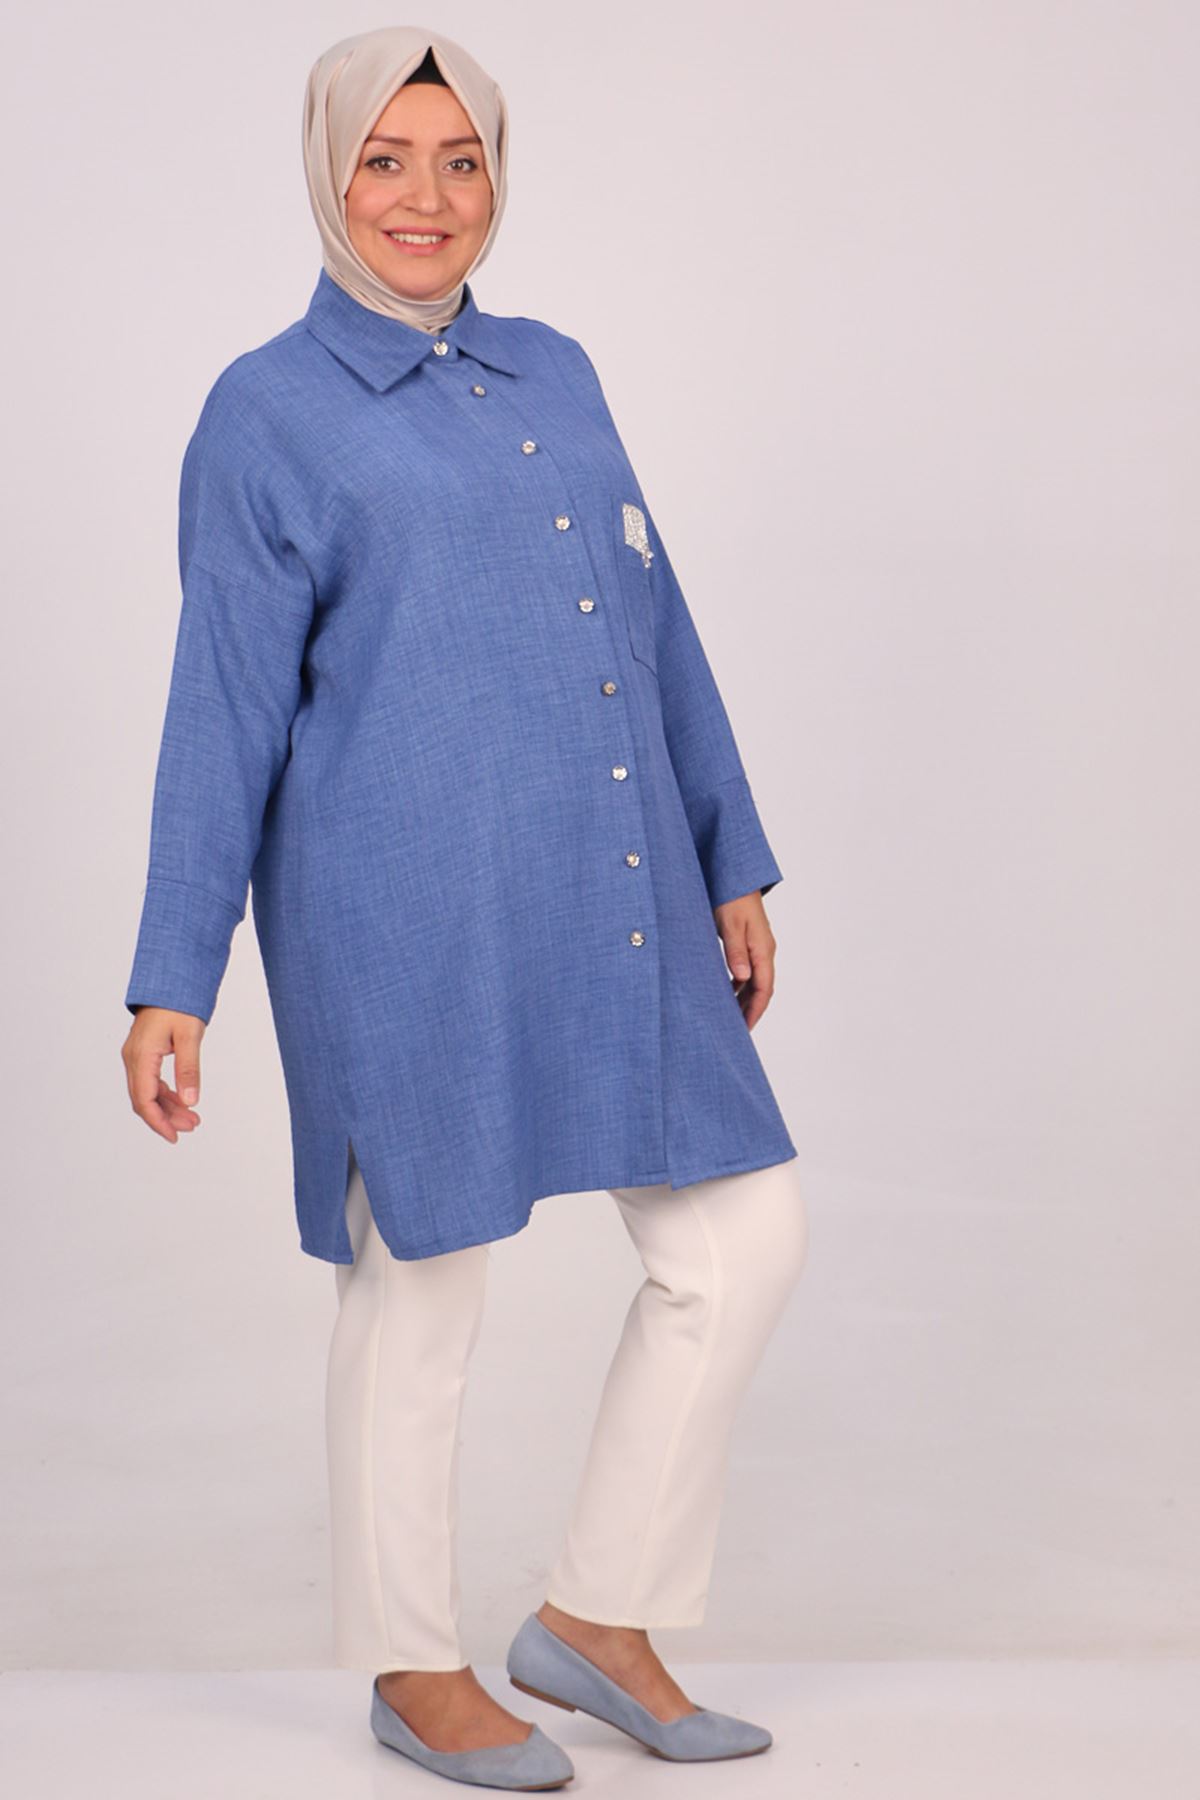 38112 Large Size Linen Airobin Shirt with Pocket Stone - Indigo